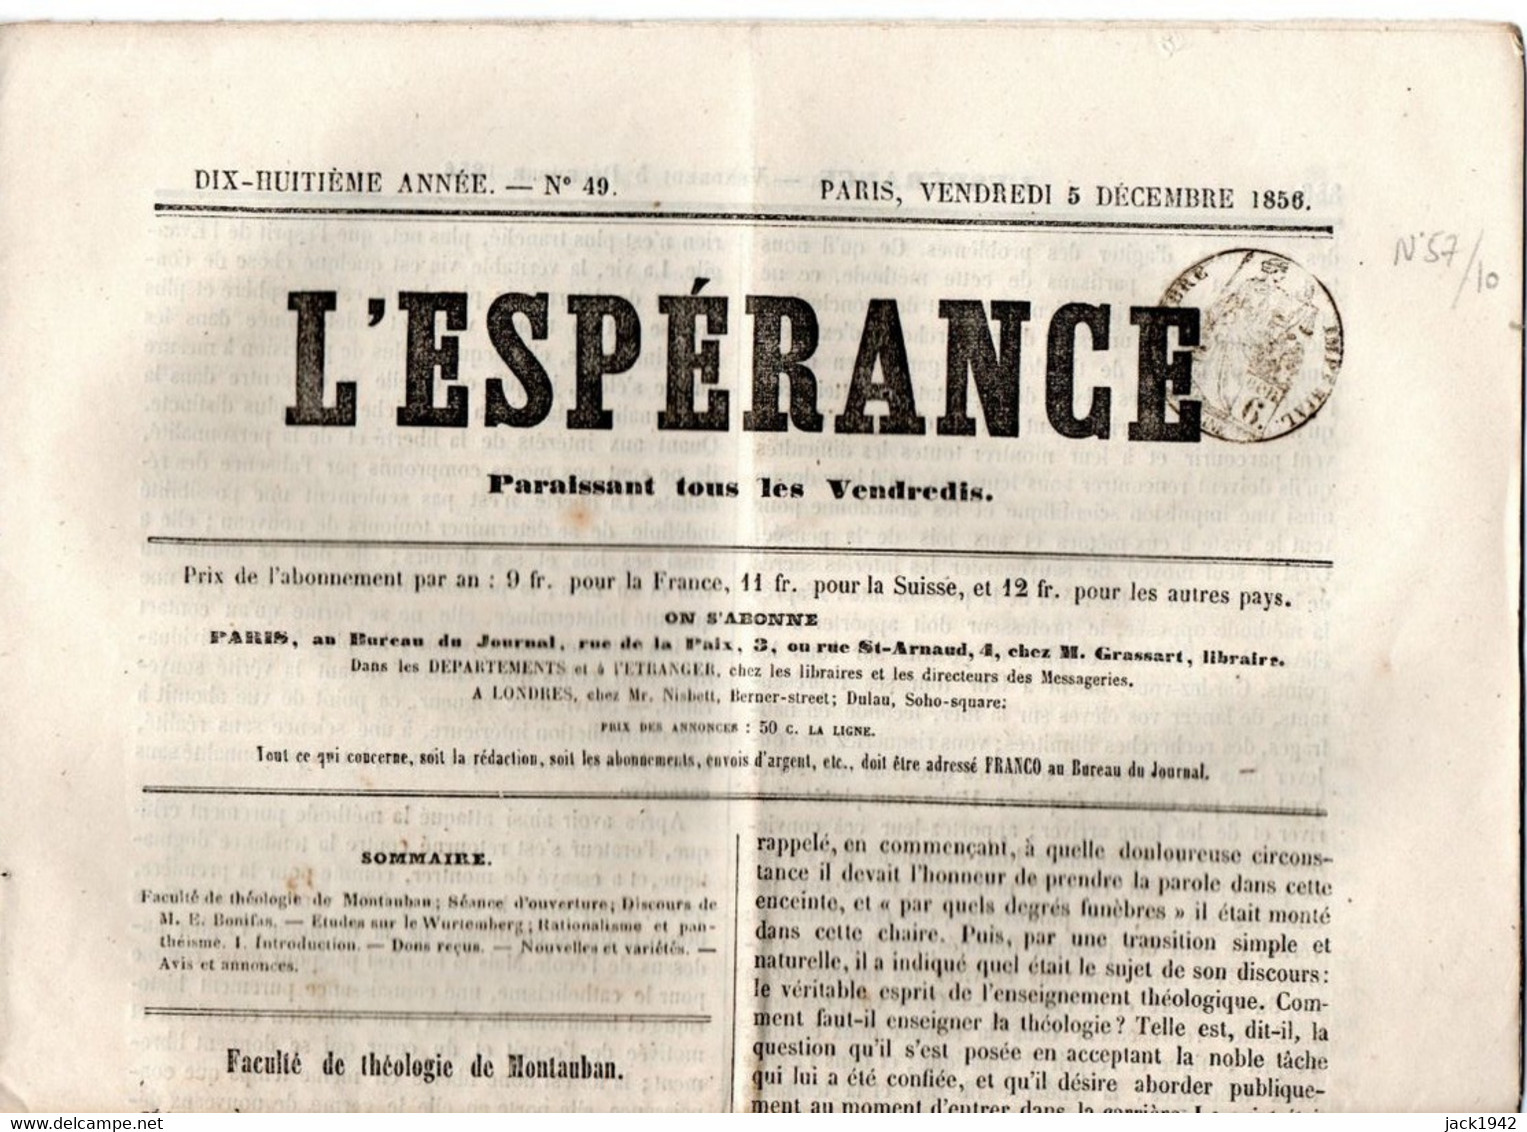 Journal L'Espérance Du 5 Décembre 1856, Avec Timbre Humide " Timbre / Impérial 6 Centimes" - Journaux